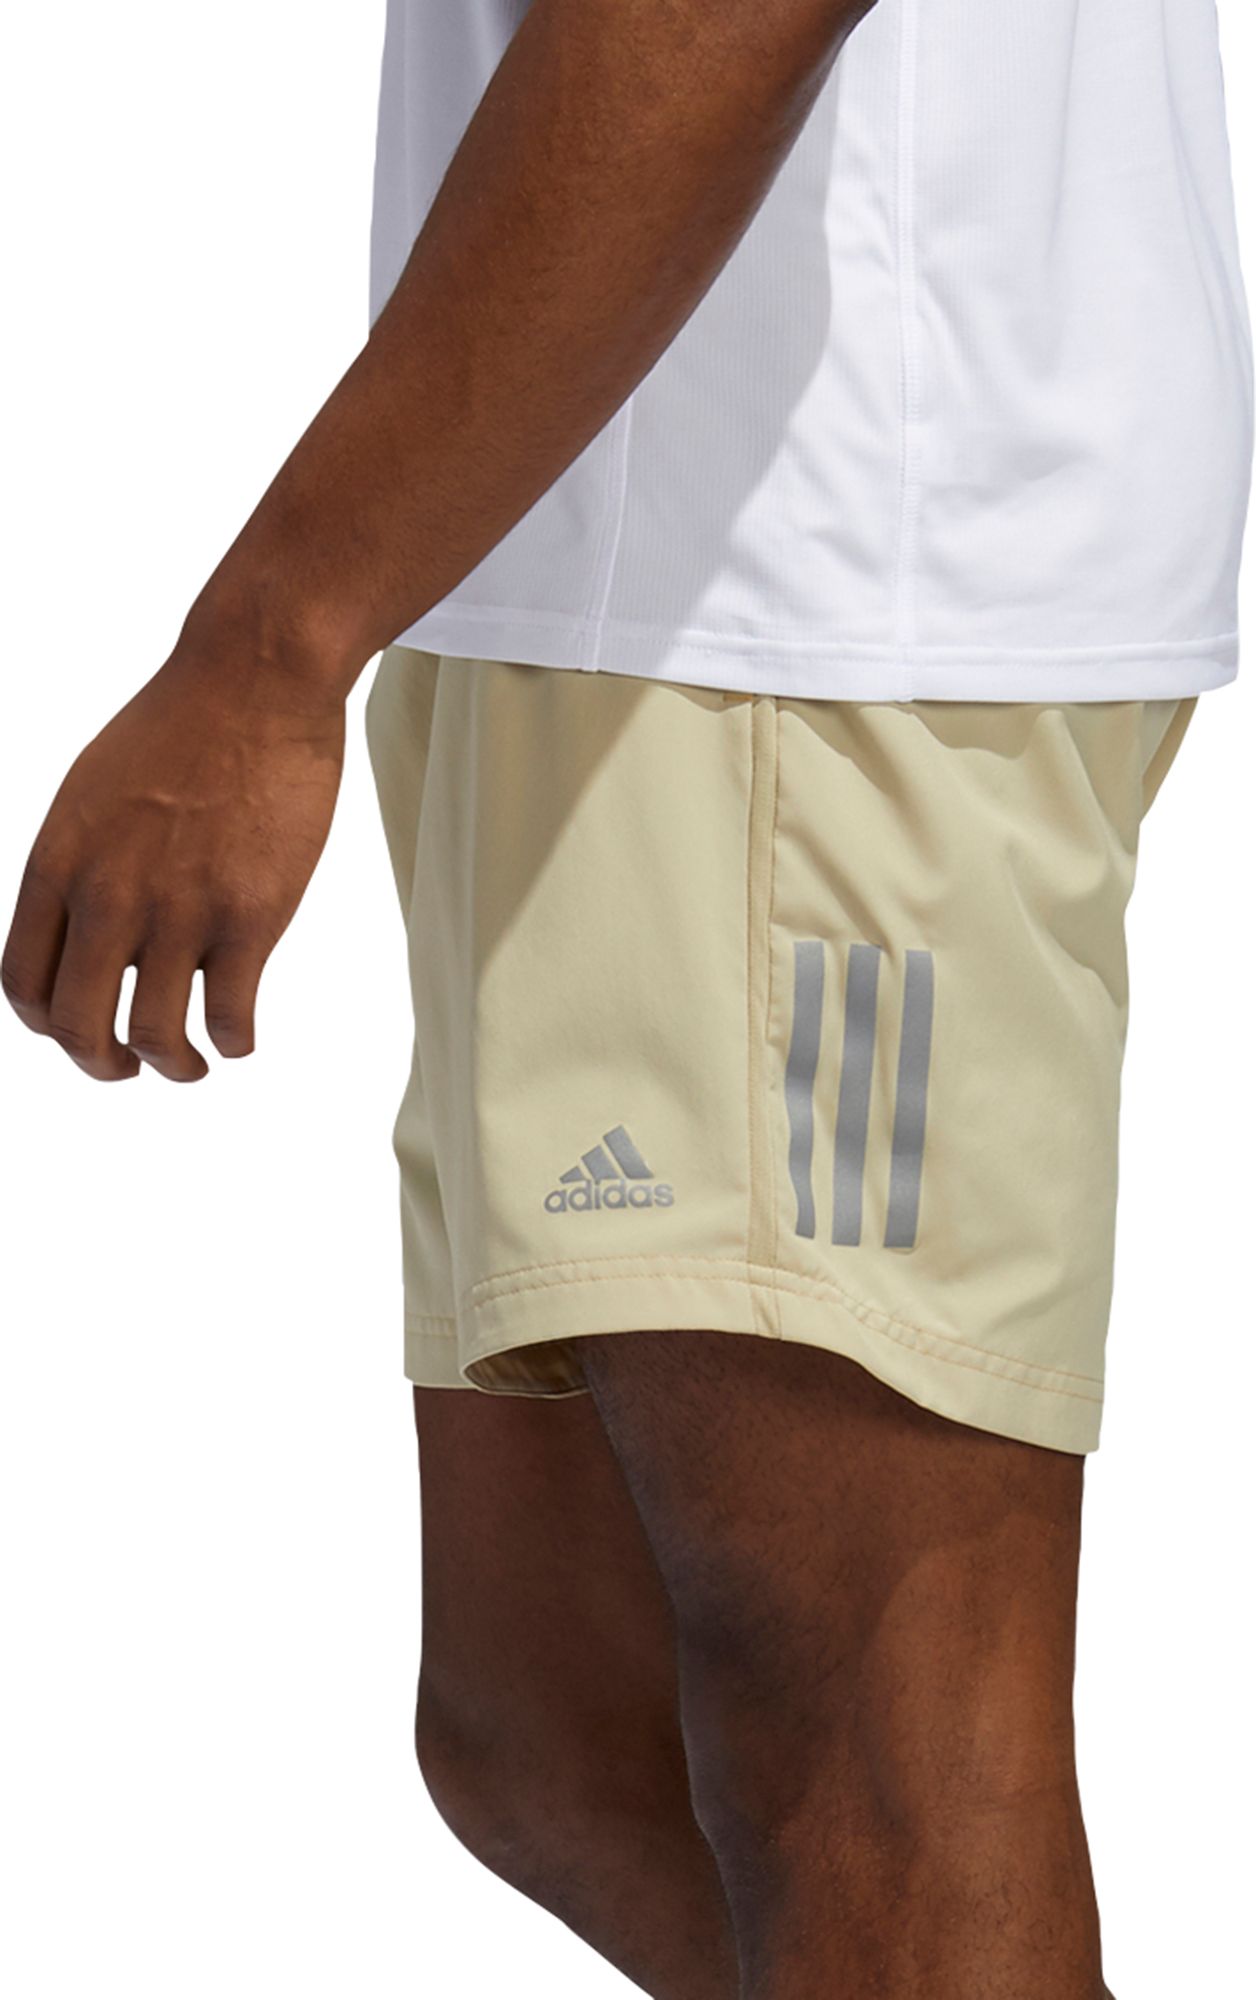 adidas own the run shorts 5